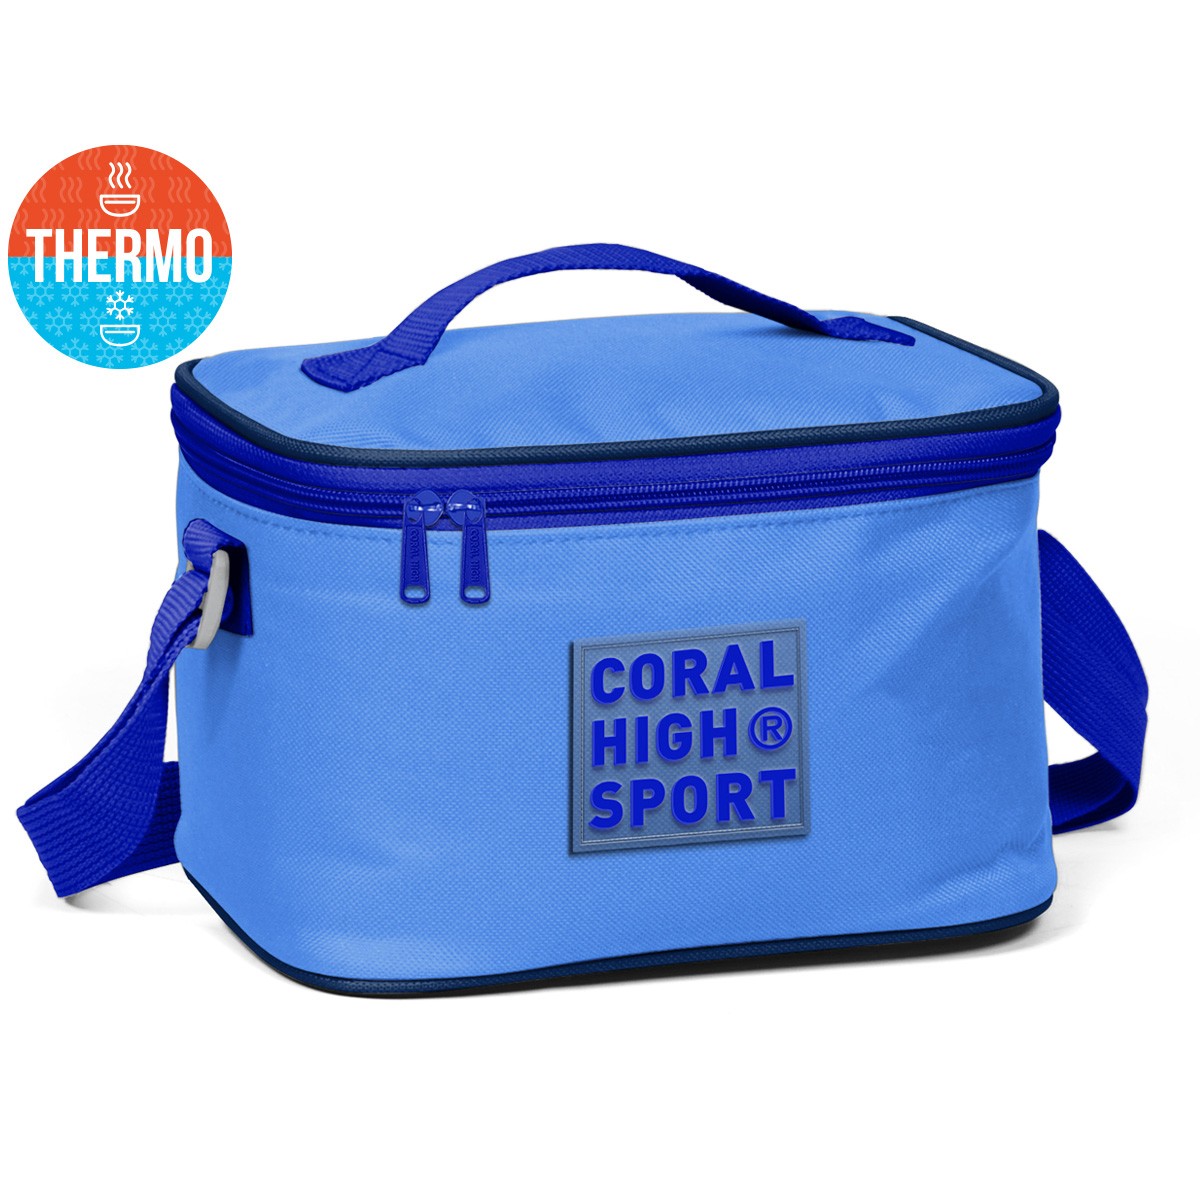 Coral High Sport Derin Mavi Saks Thermo Beslenme Çantası 22803